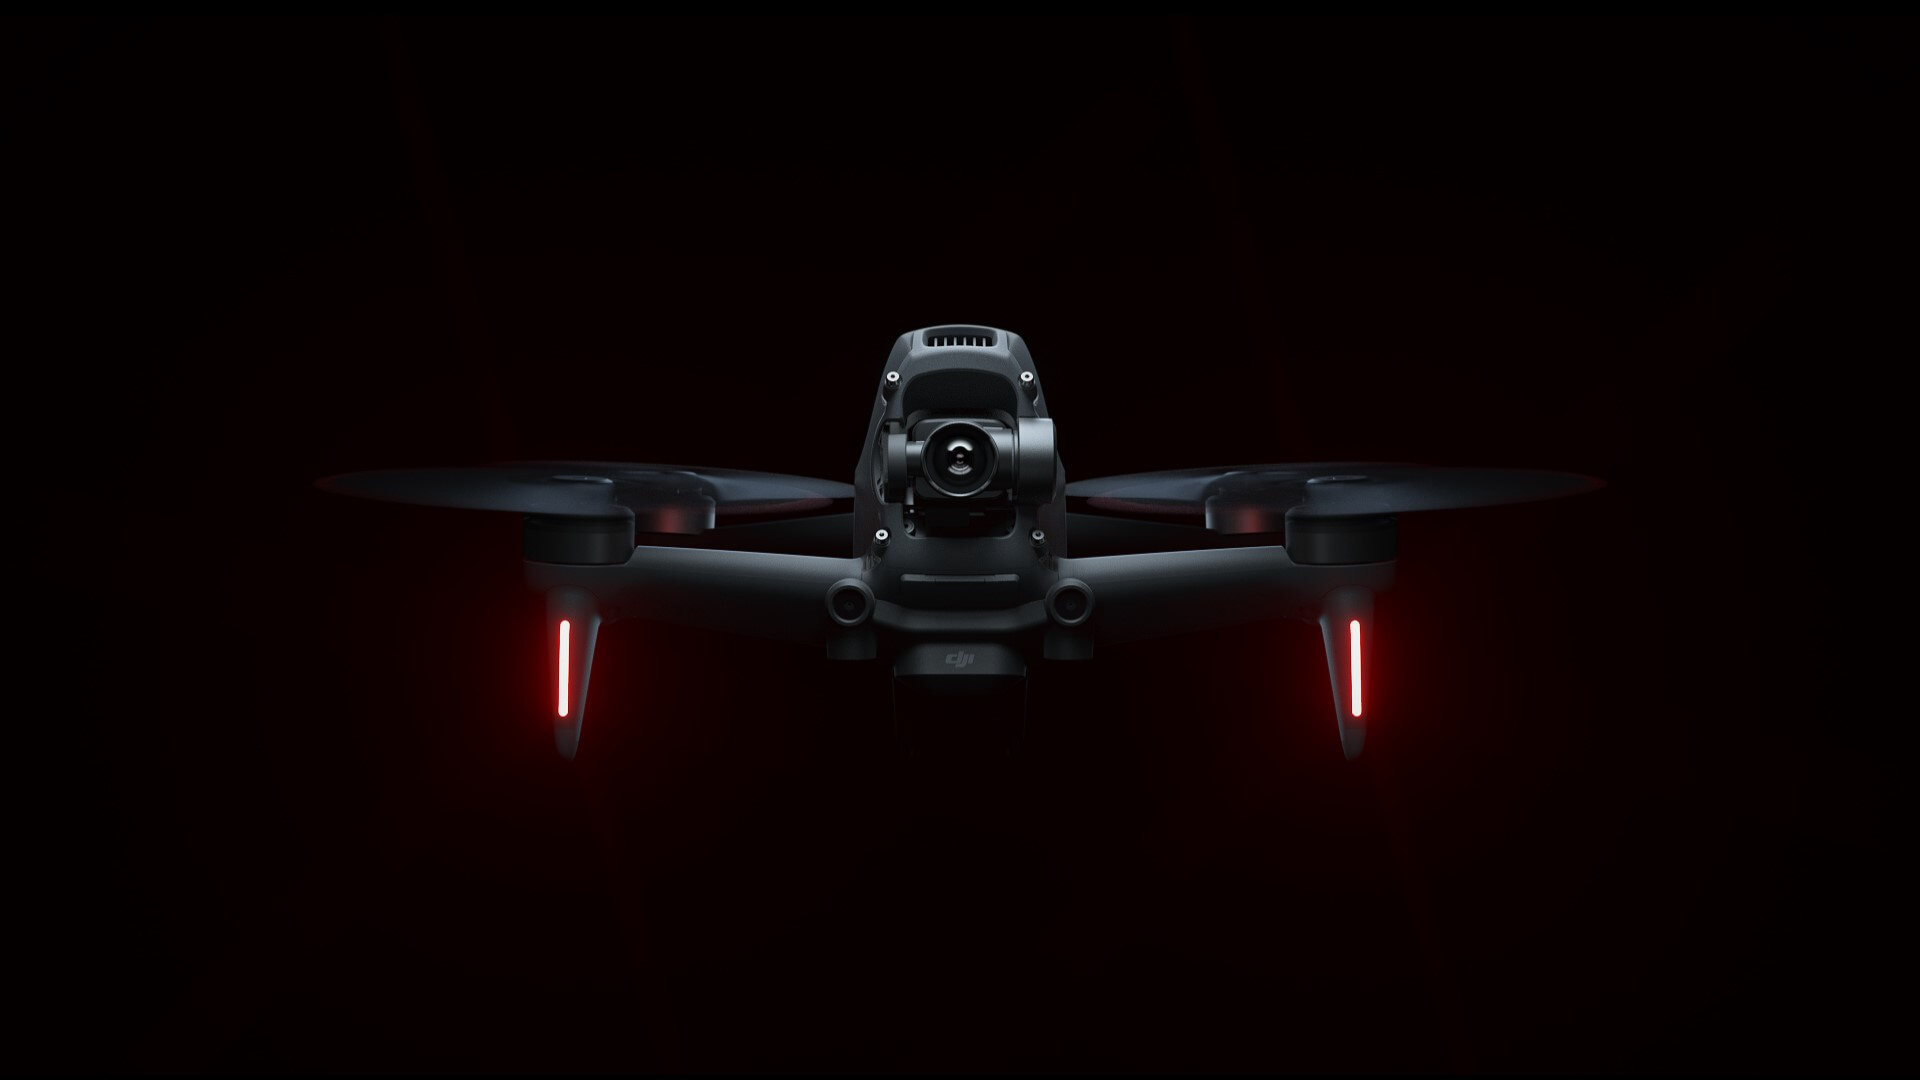 Camera Drone Deals
